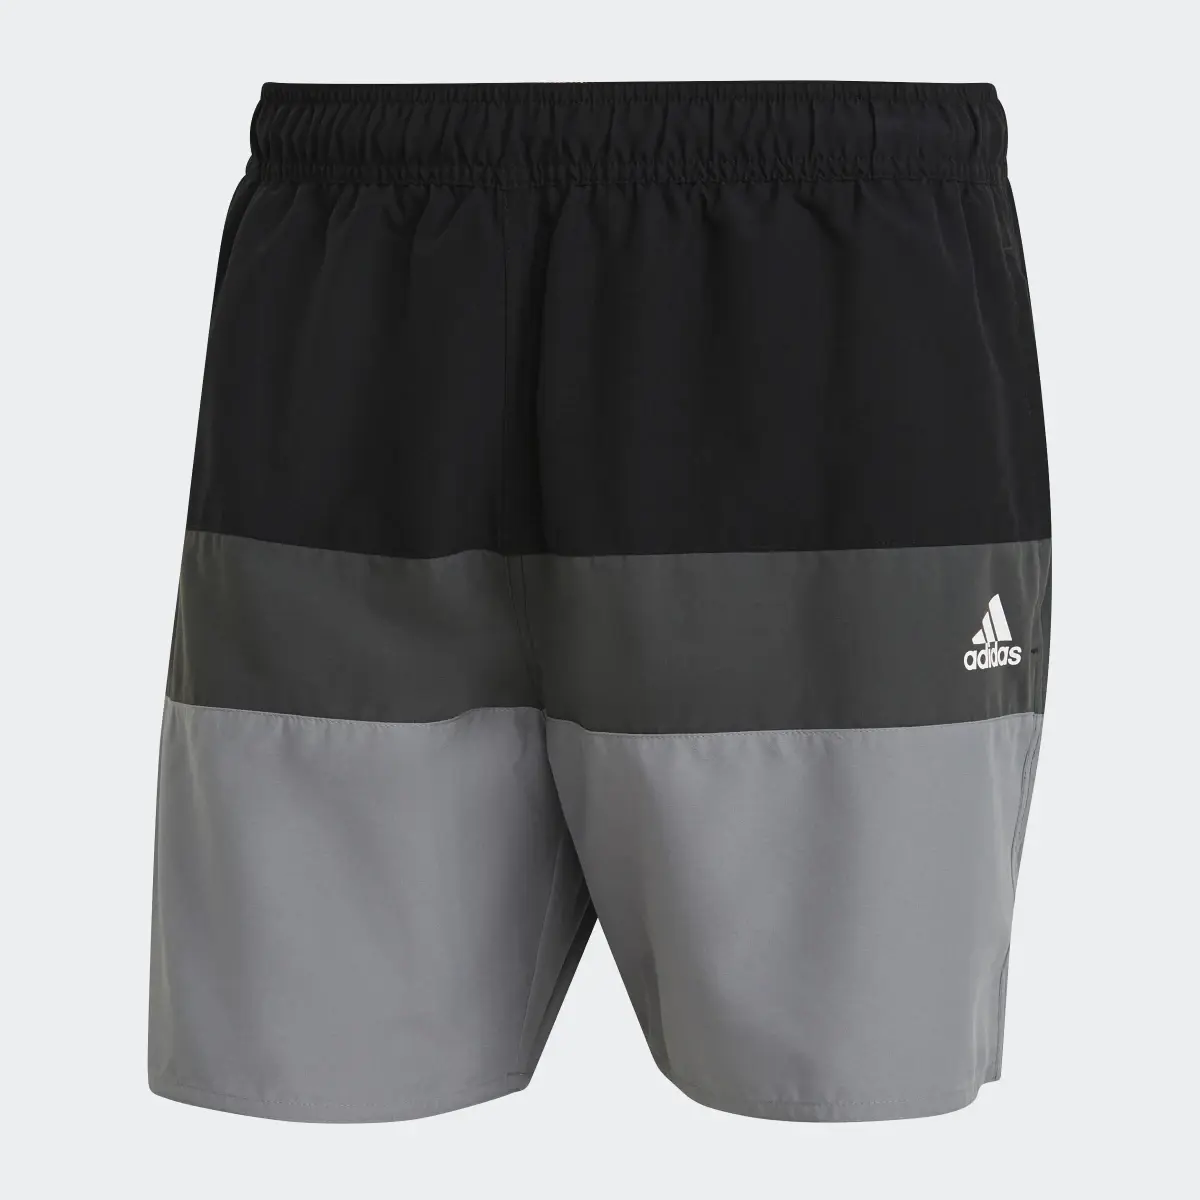 Adidas Short-Length Colorblock Badeshorts. 1